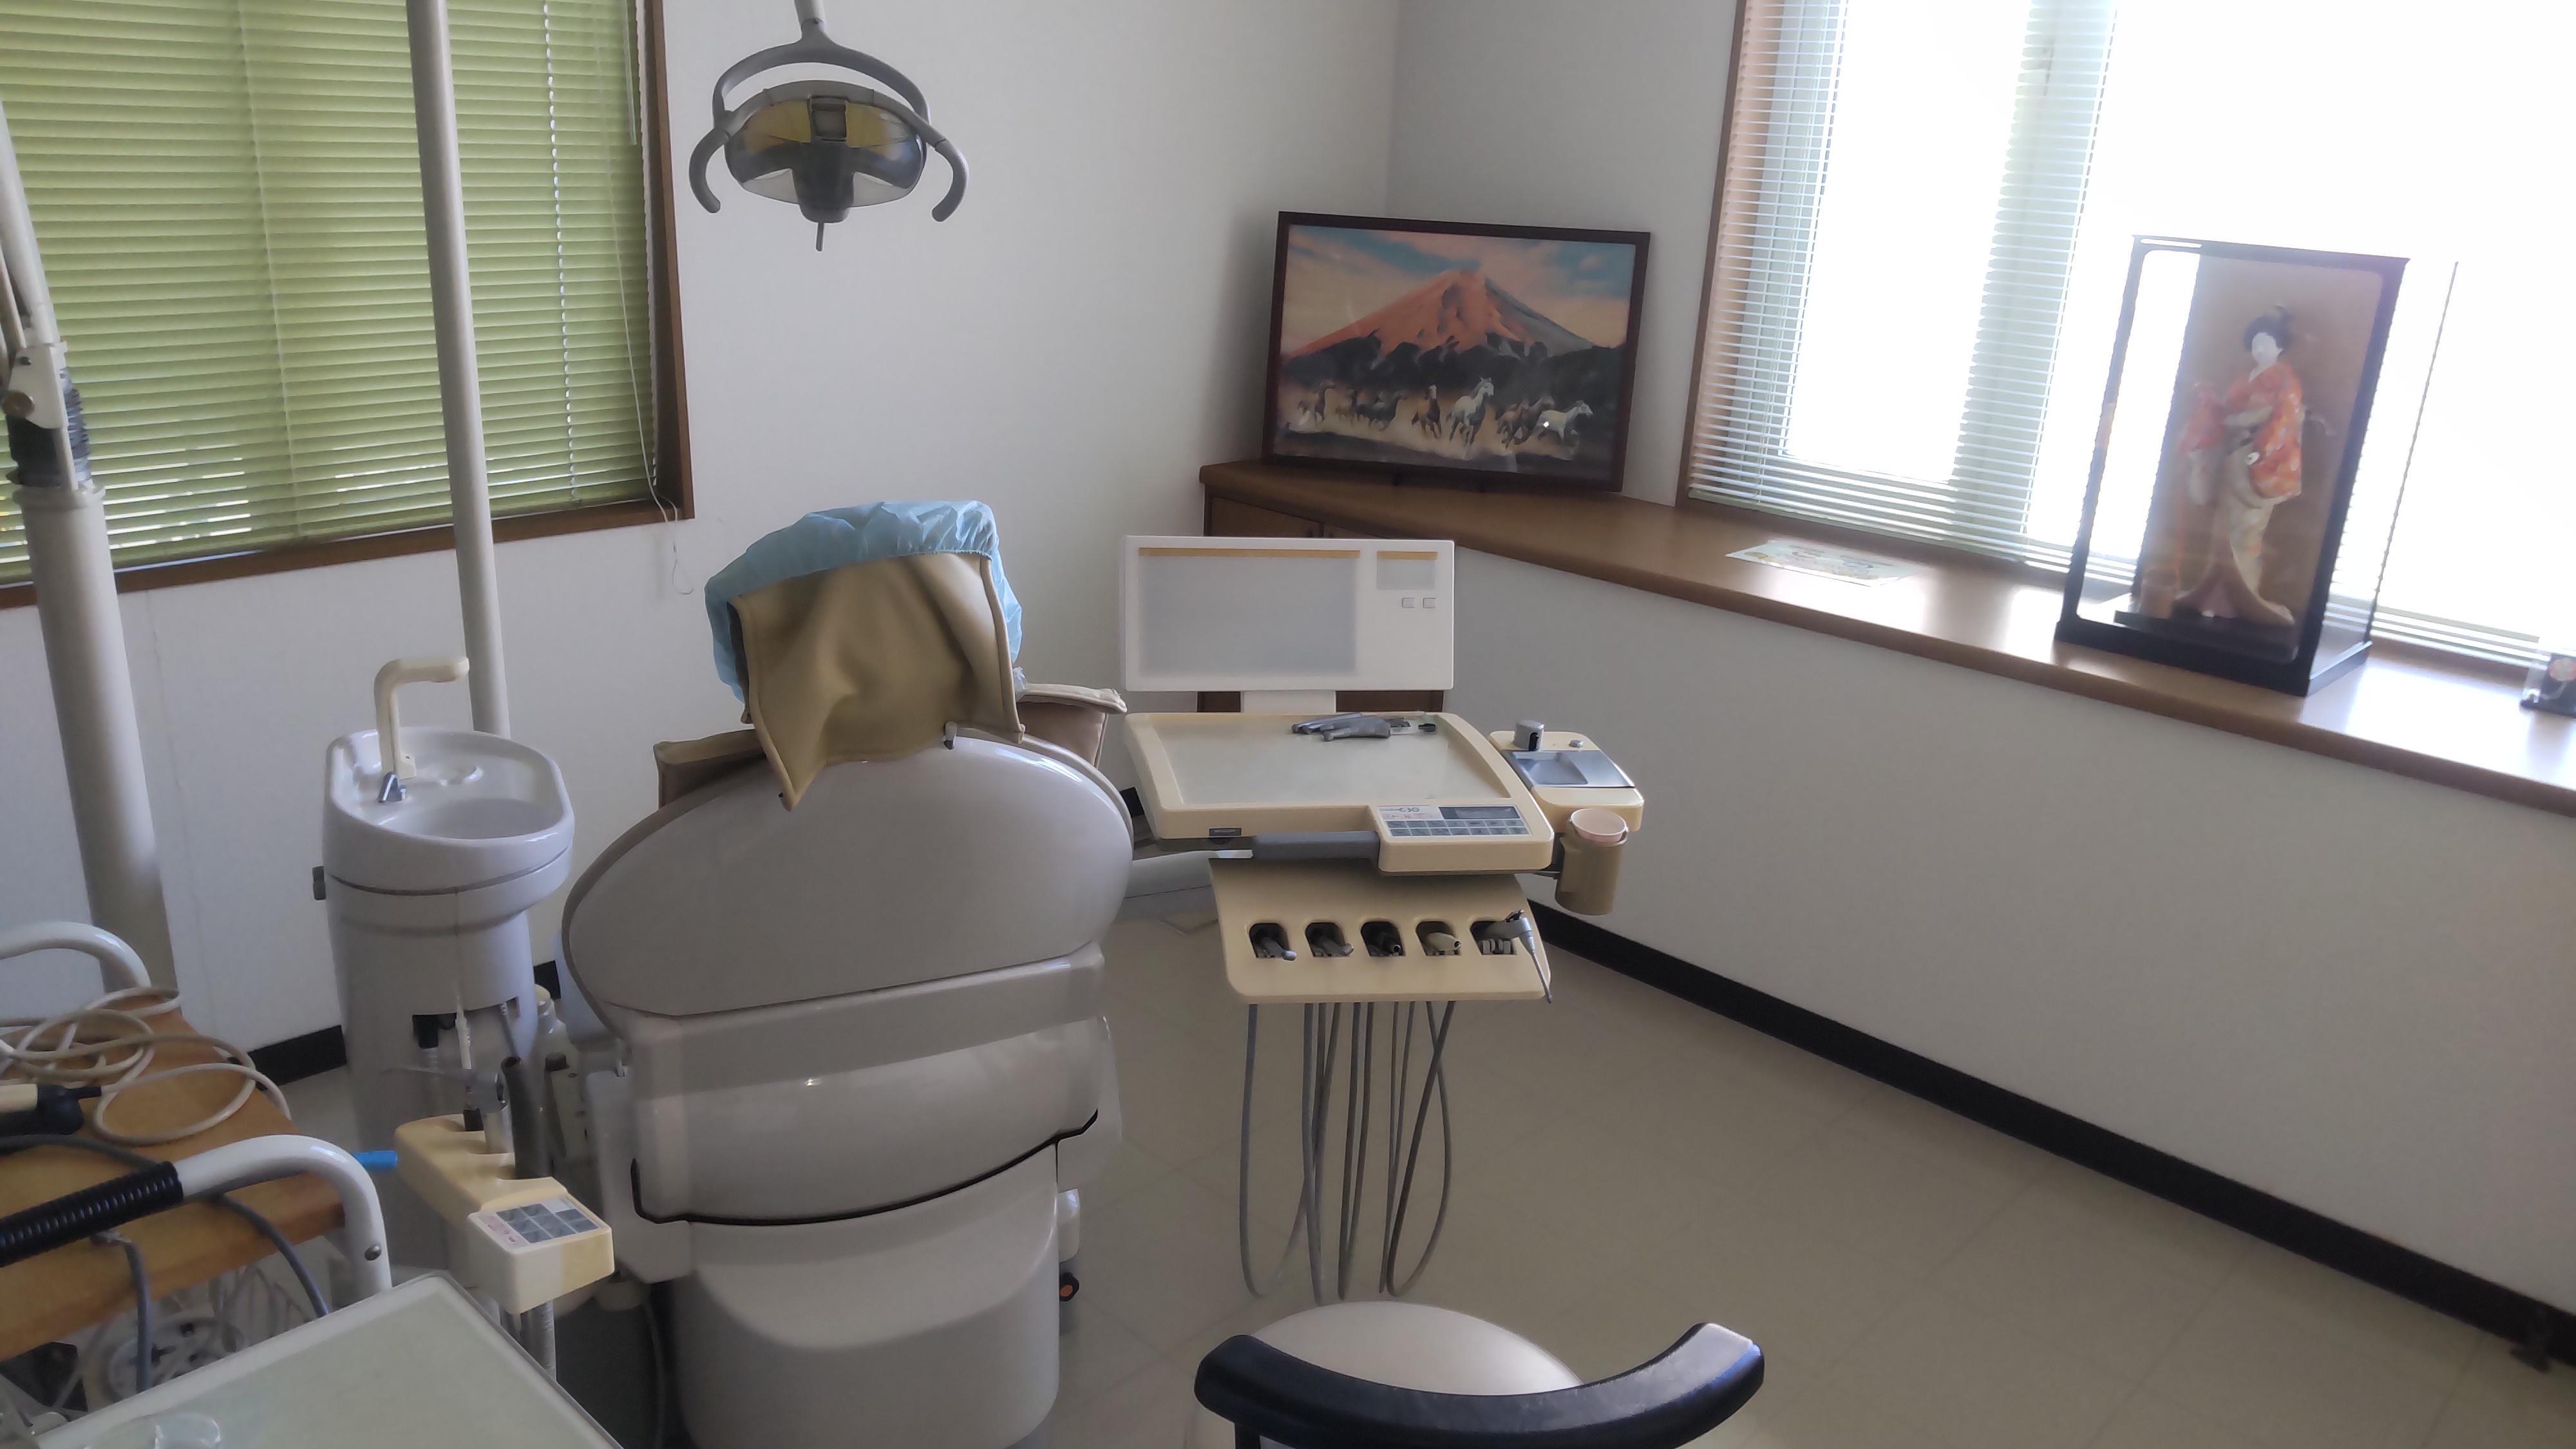 歯科の診療台その2です。